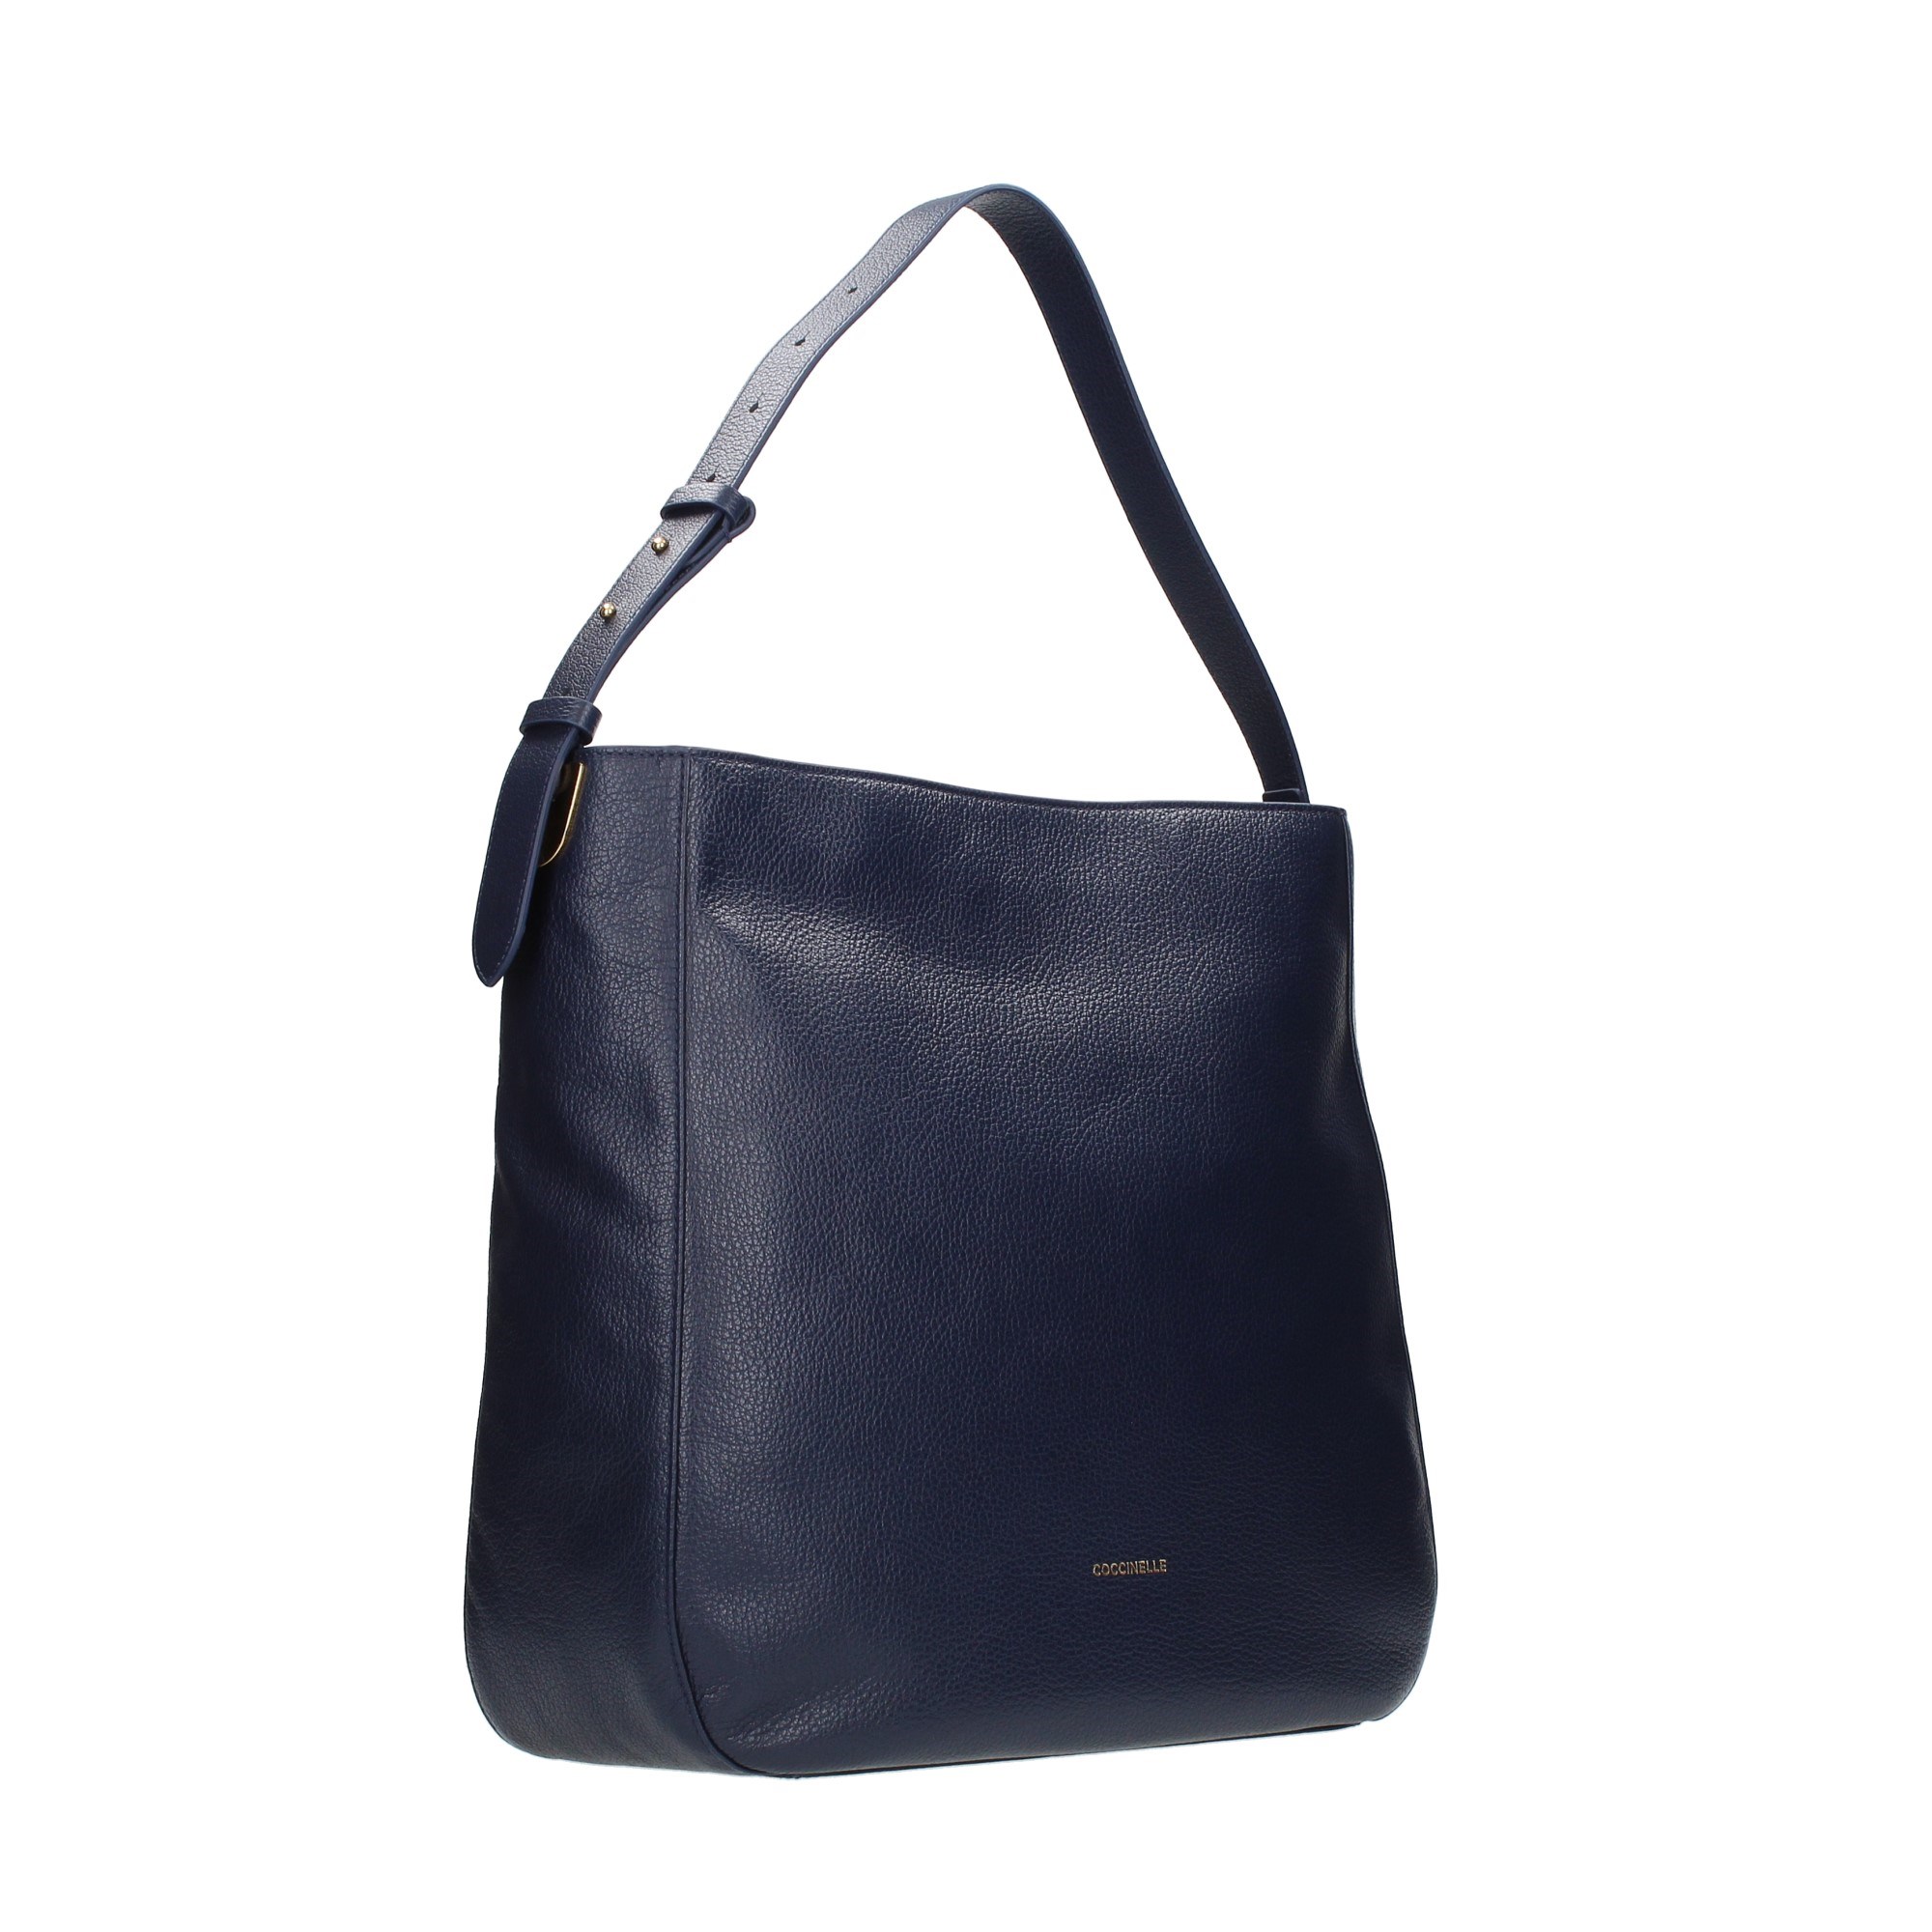 Coccinelle Accessories Women Shoulder Bags Blue H60 130201